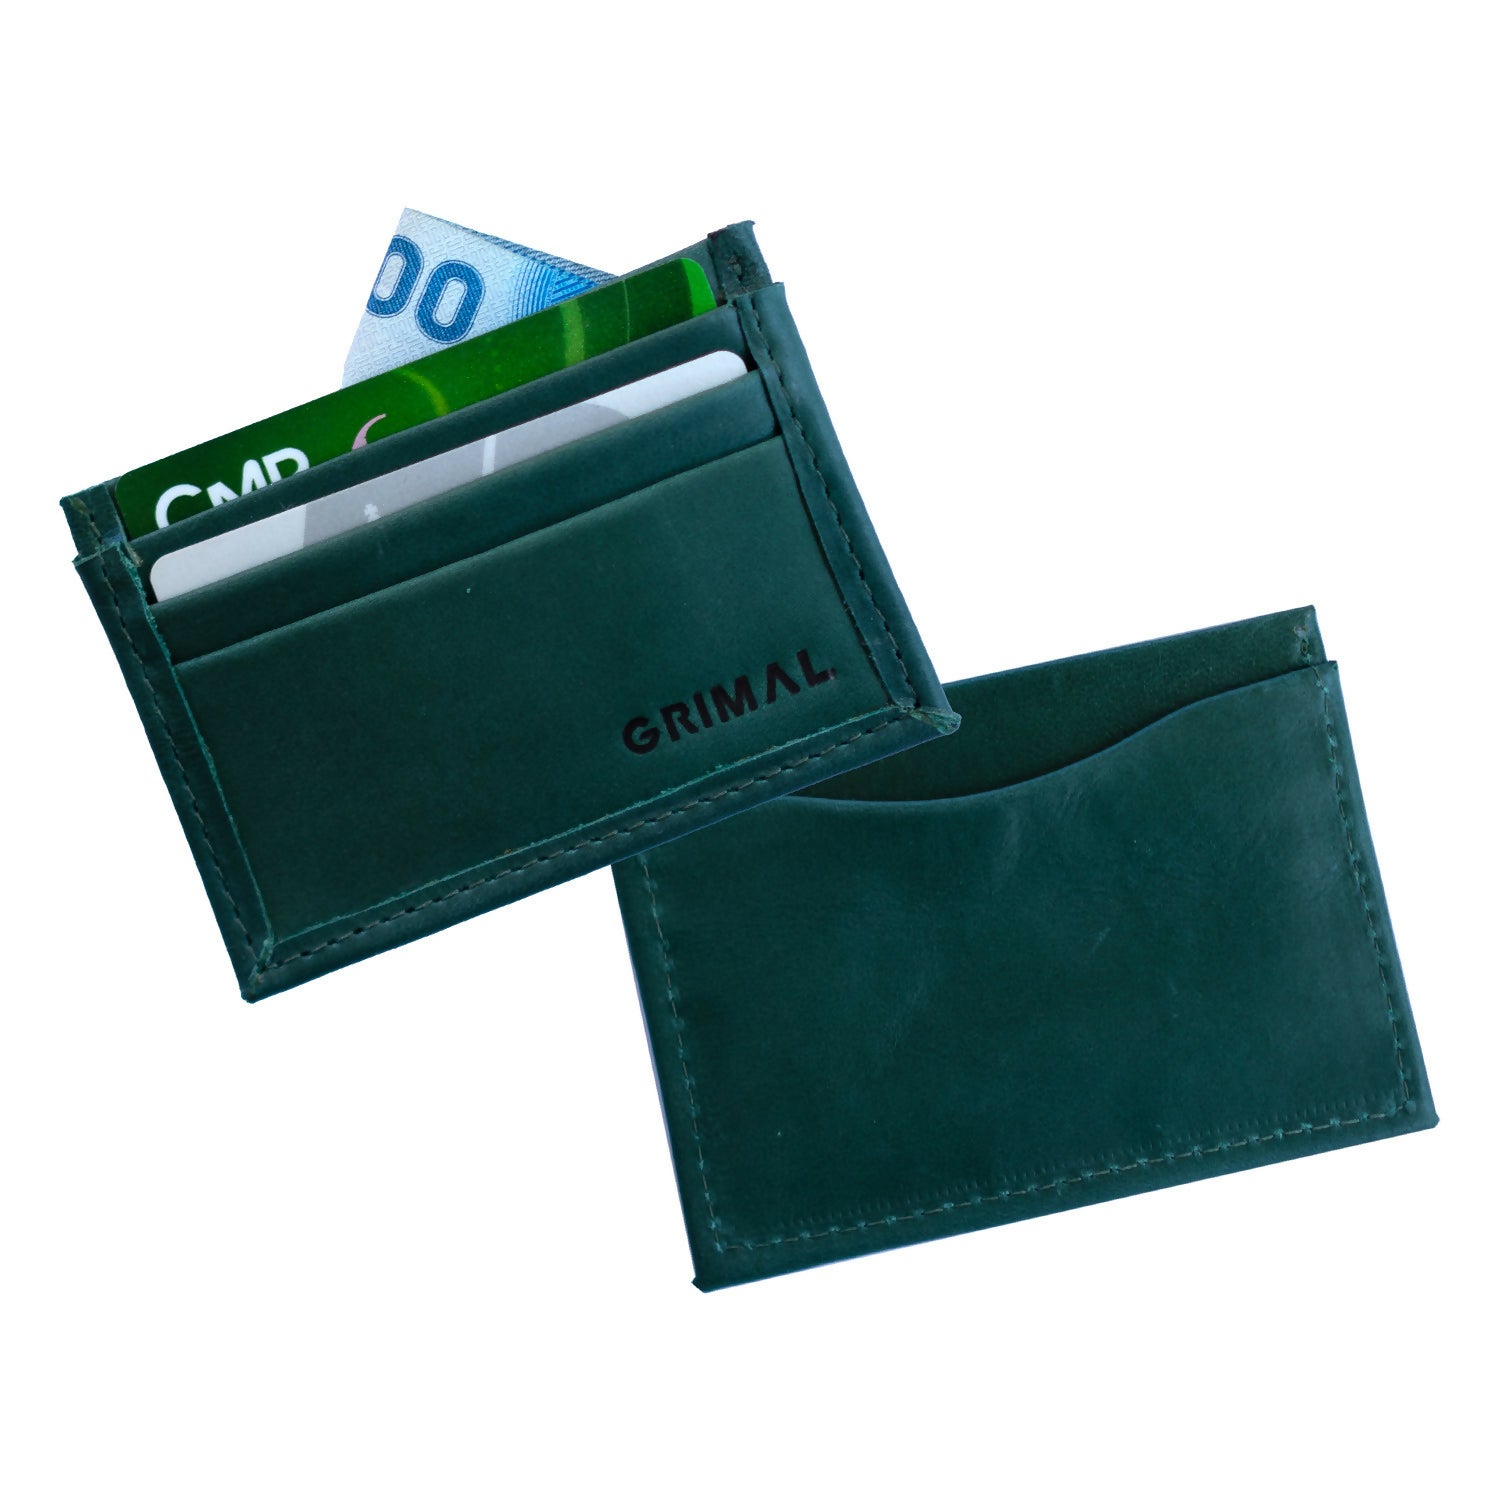 Tarjetero, billetera de cuero verde